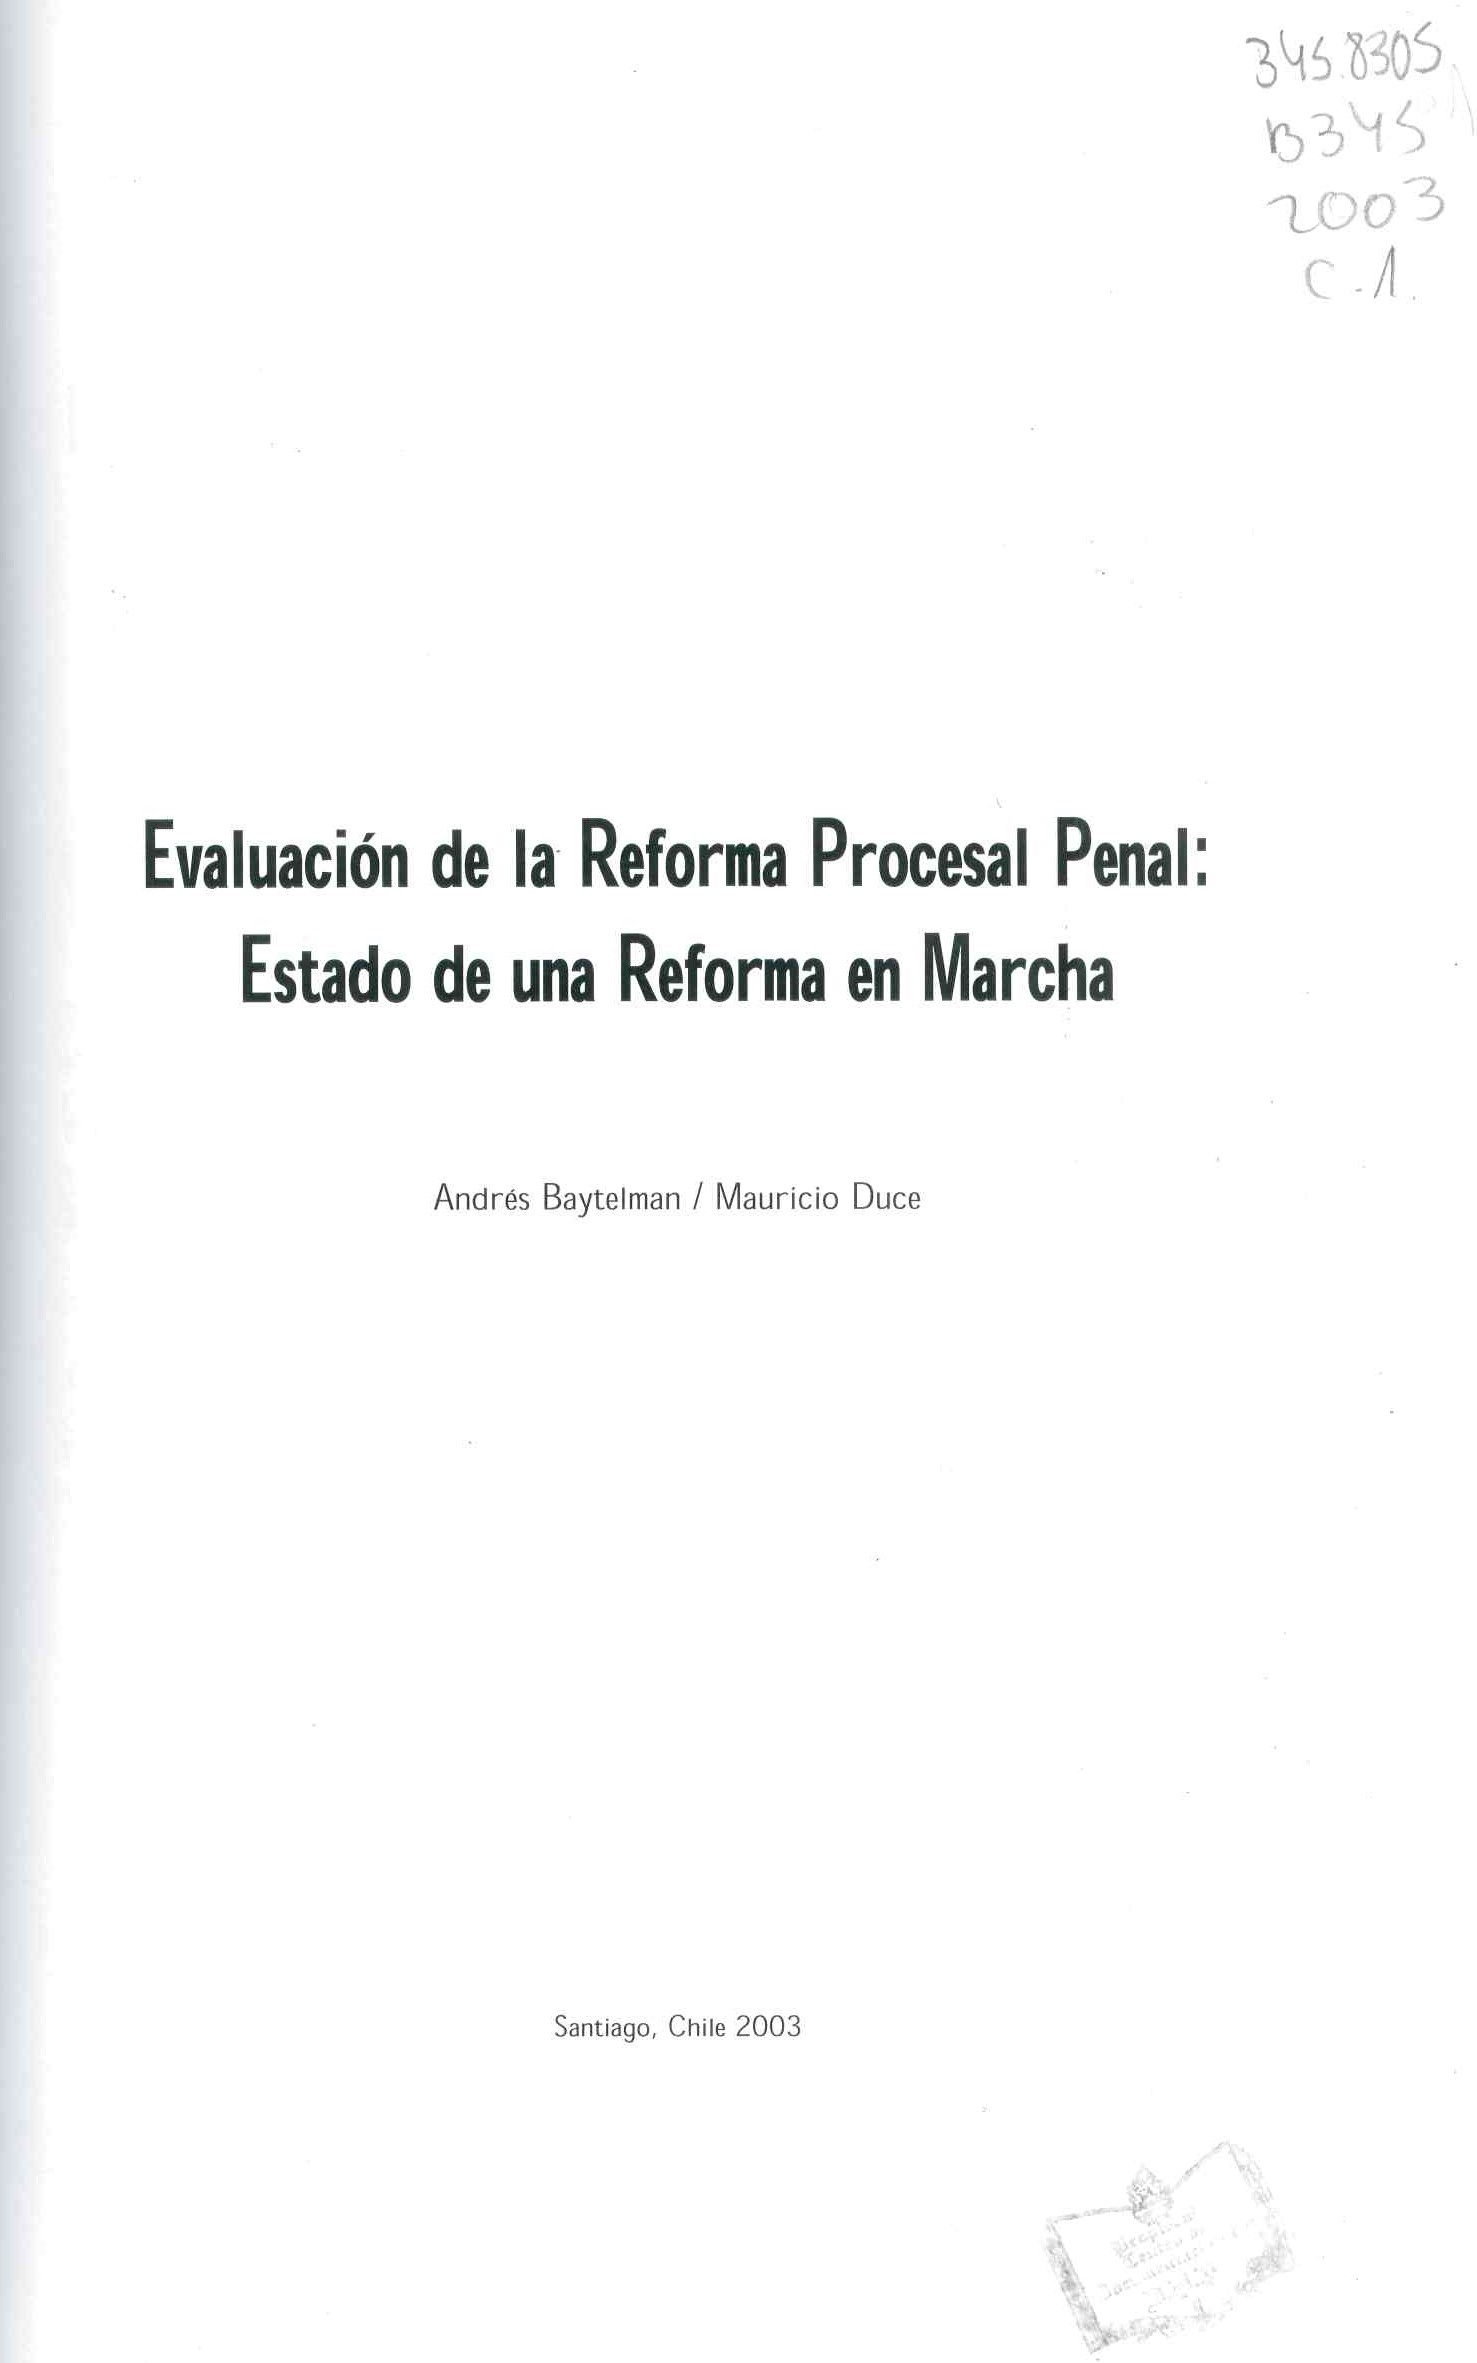 Evaluación de la reforma procesal penal chilena : estado de una reforma en marcha